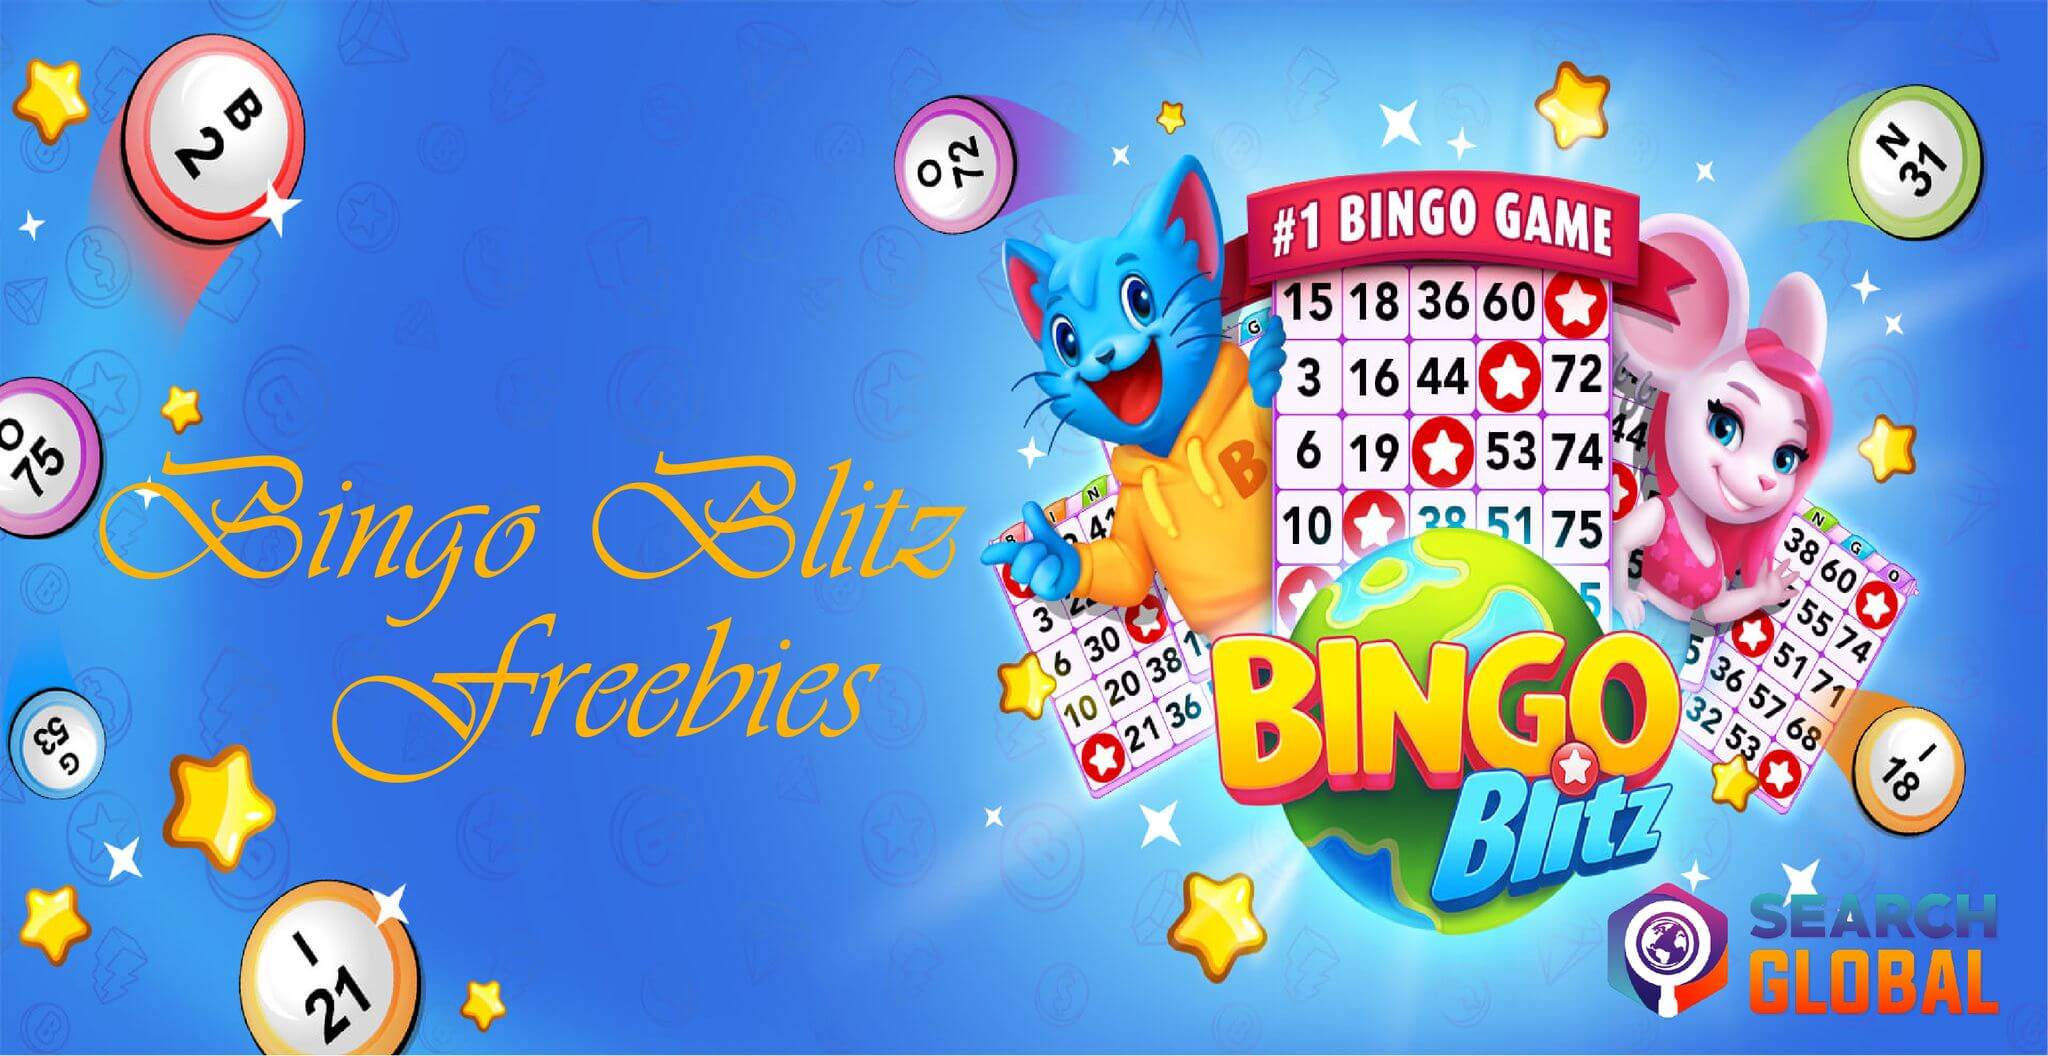 Bingo Blitz Freebies